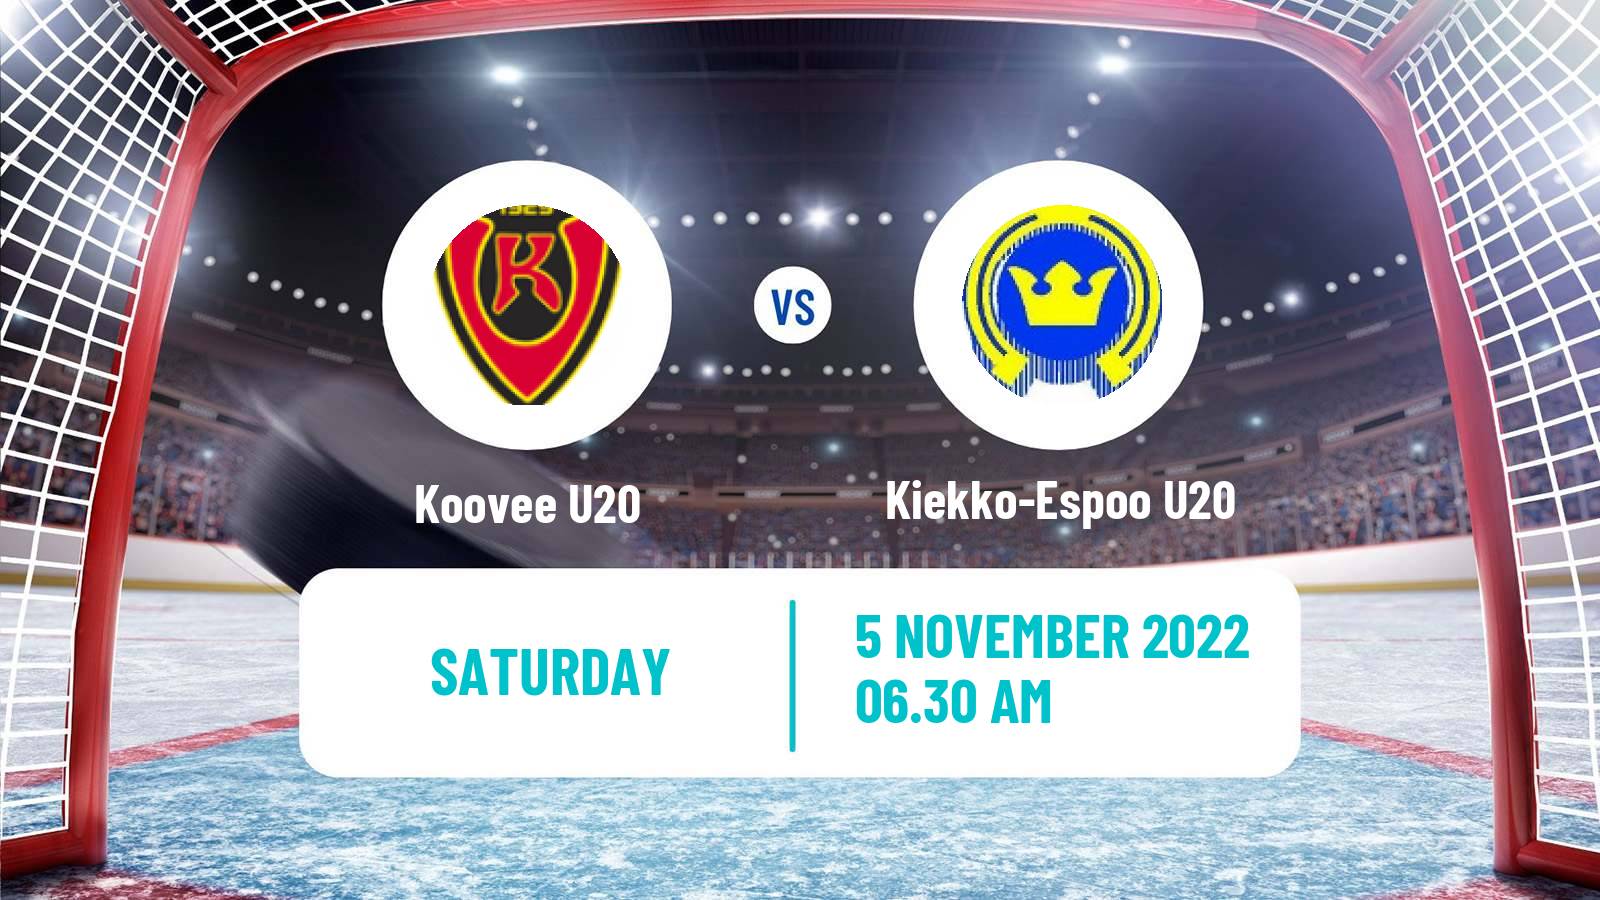 Hockey Finnish SM-sarja U20 Koovee U20 - Kiekko-Espoo U20